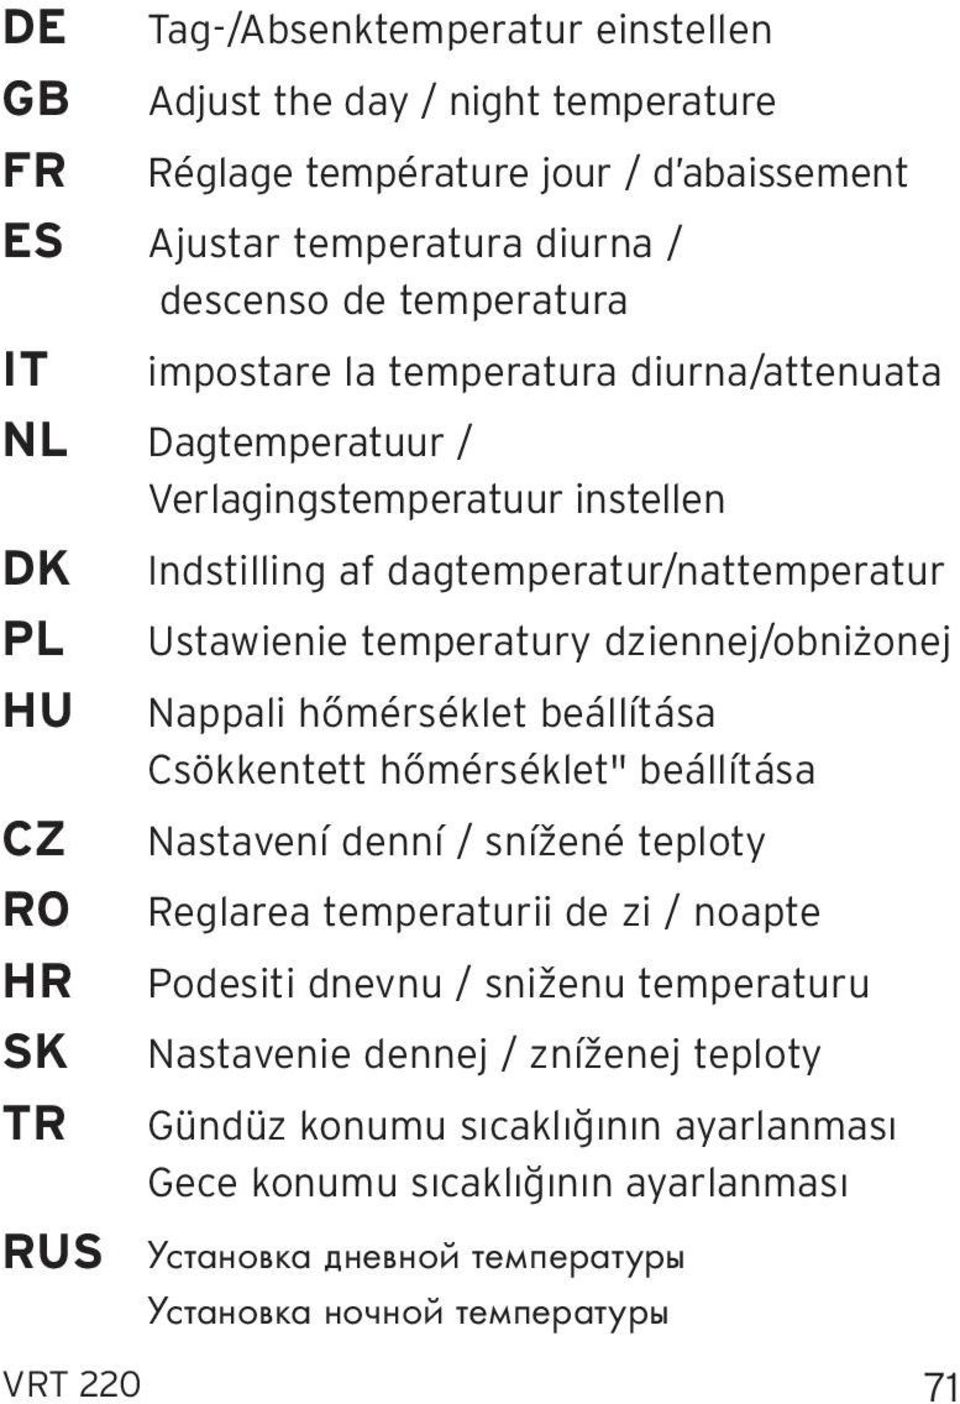 dziennej/obniżonej HU Nappali hőmérséklet beállítása Csökkentett hőmérséklet" beállítása CZ Nastavení denní / snížené teploty RO Reglarea temperaturii de zi / noapte HR Podesiti